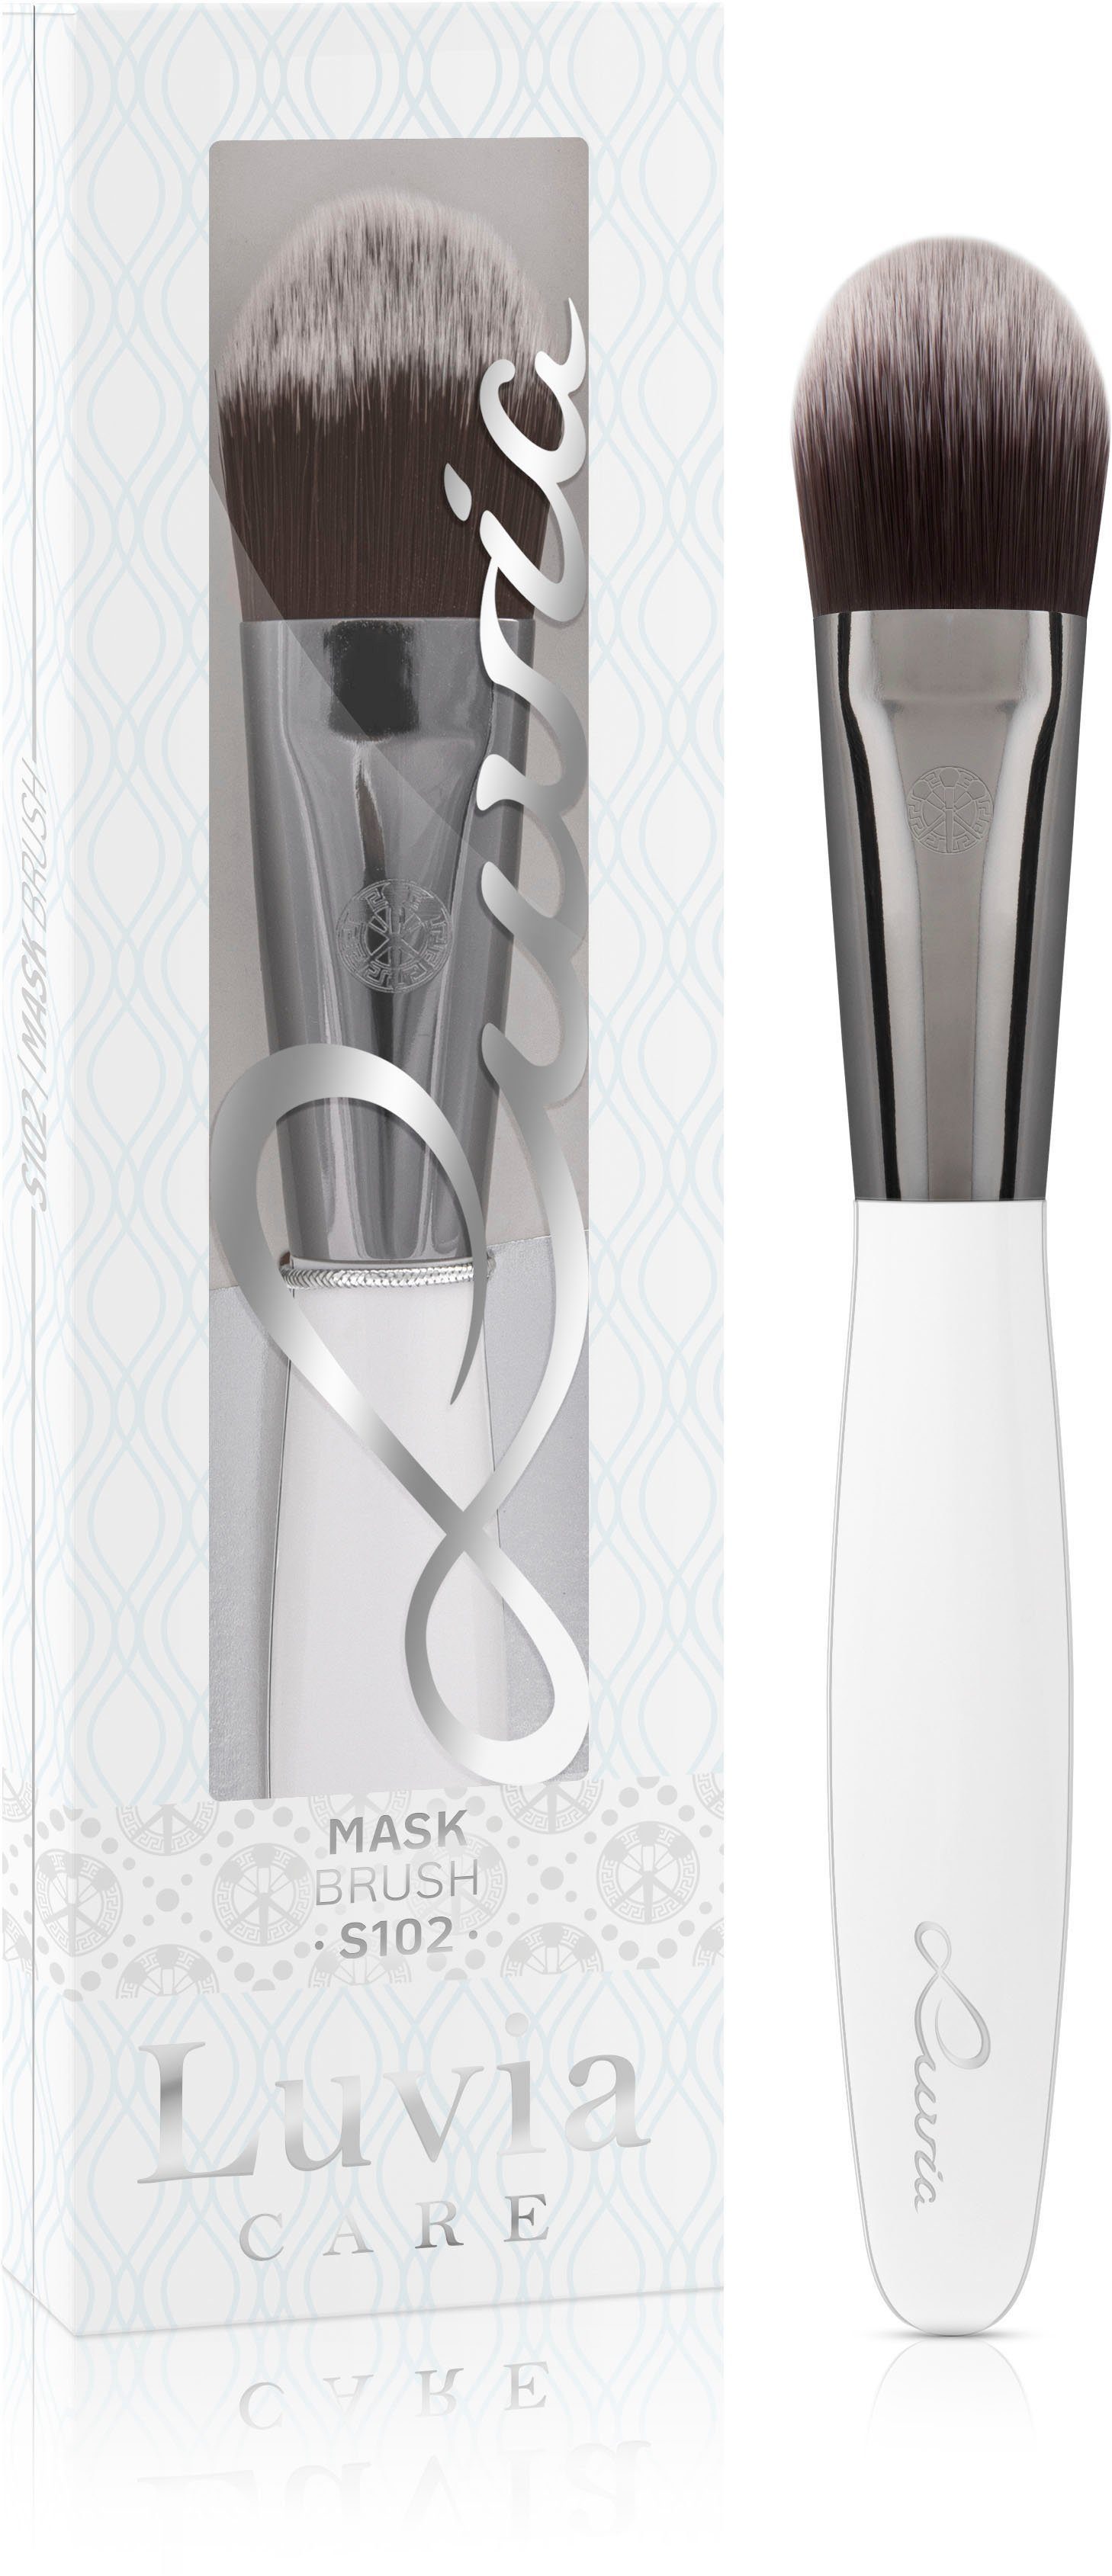 Cosmetics Brush Mask Maskenpinsel Luvia